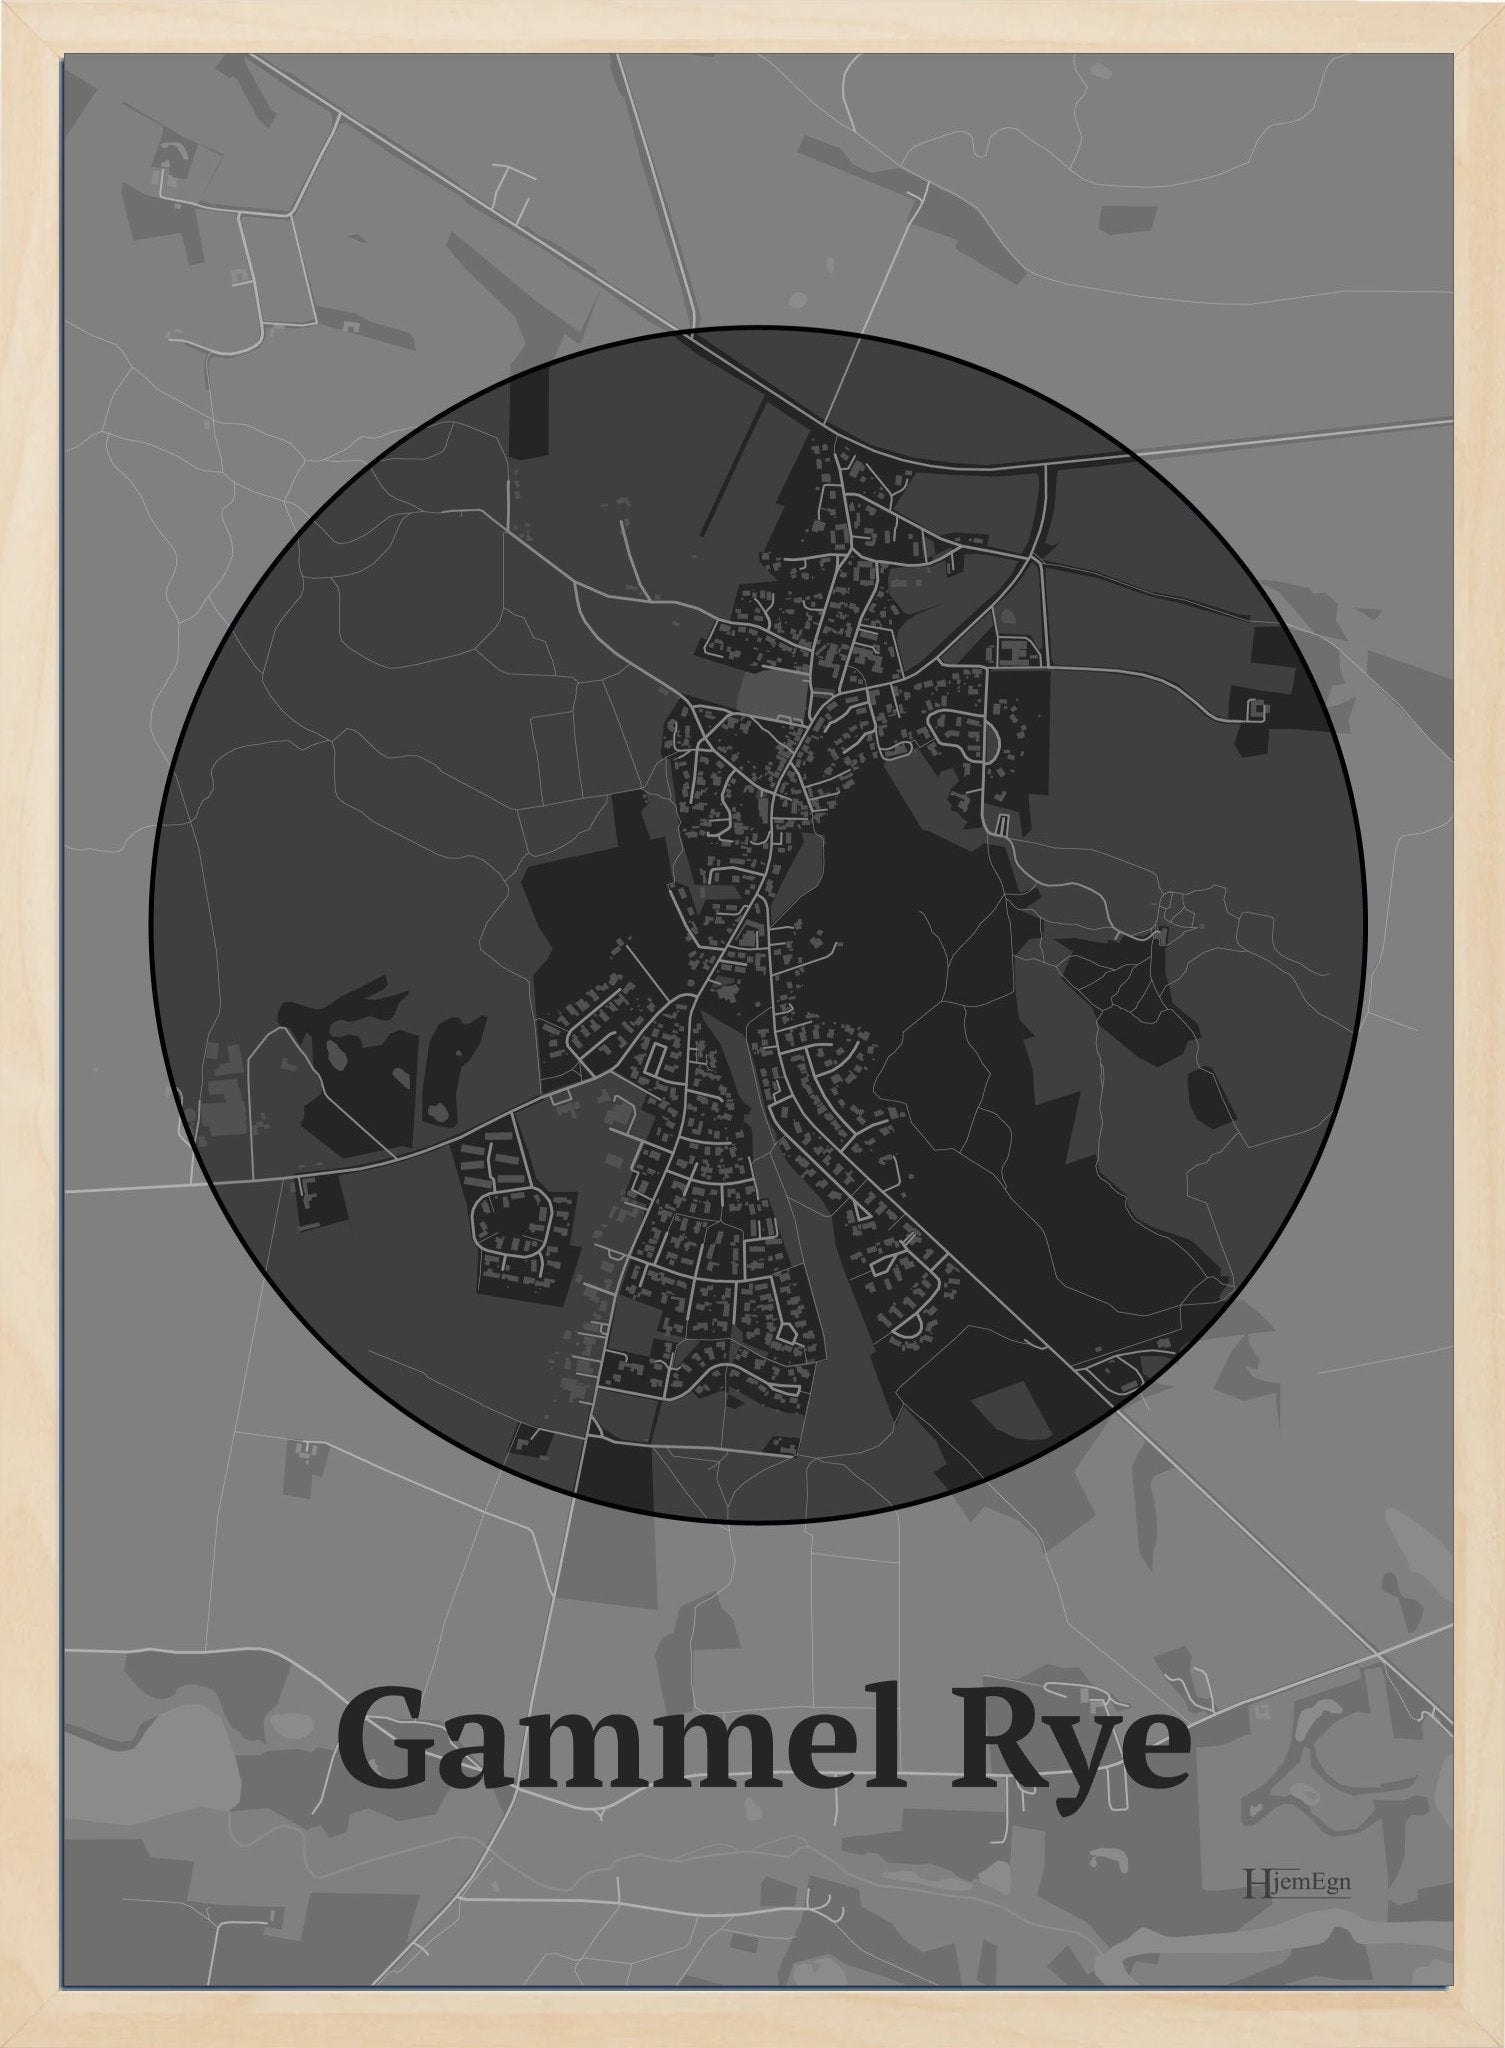 Gammel Rye plakat i farve mørk grå og HjemEgn.dk design centrum. Design bykort for Gammel Rye